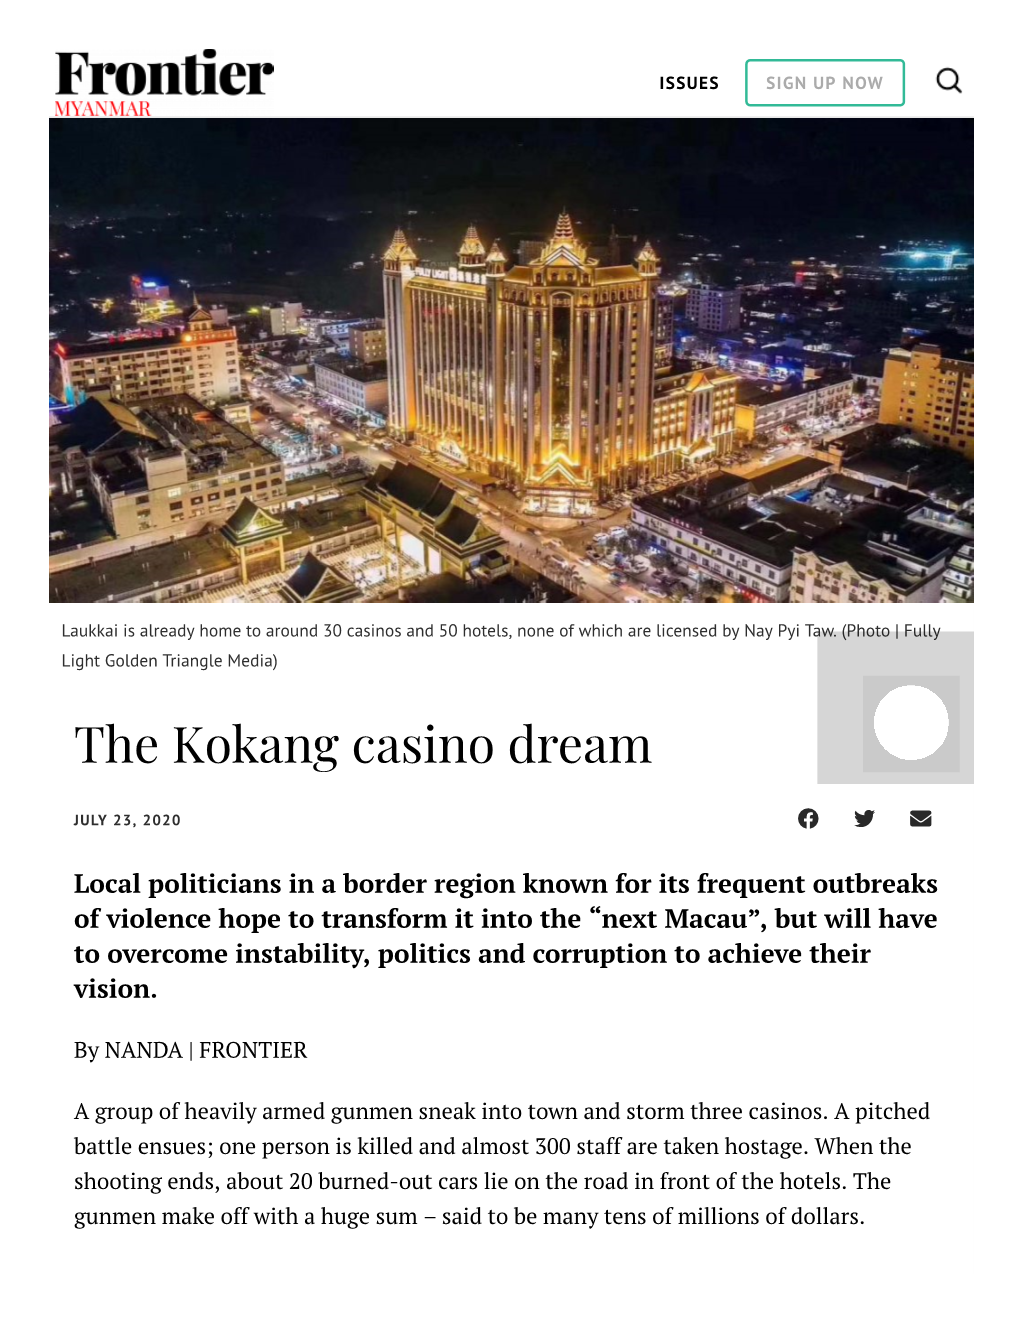 The Kokang Casino Dream